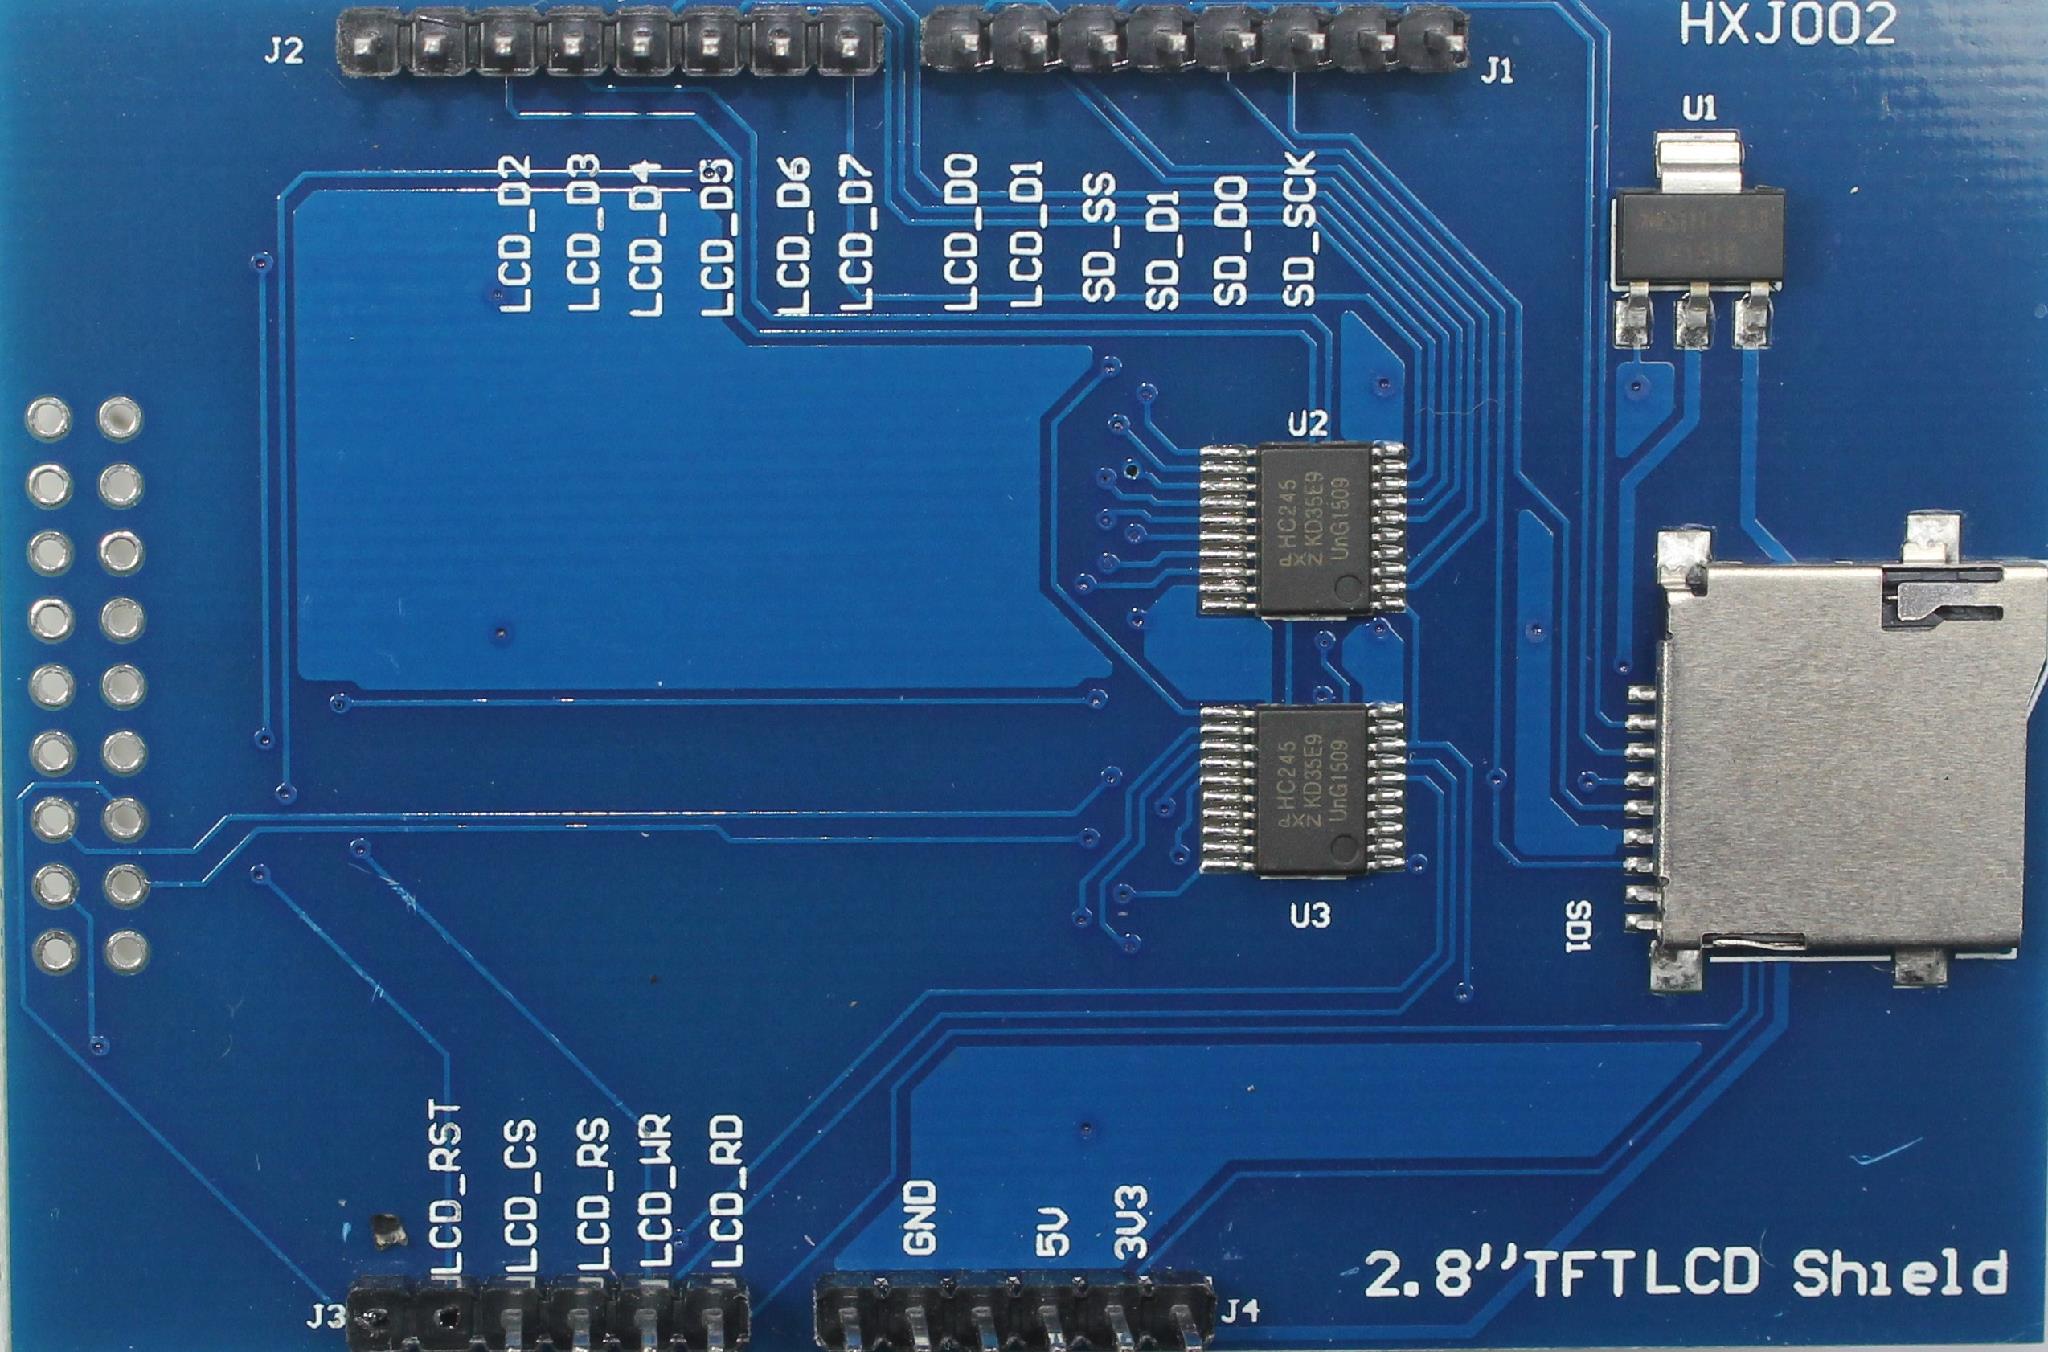 Tft shield. 3.2 TFT LCD Shield for Arduino Mega 2560. 3.5 TFT LCD Shield. 2.8"TFT Shield. Arduino TFT Shield.